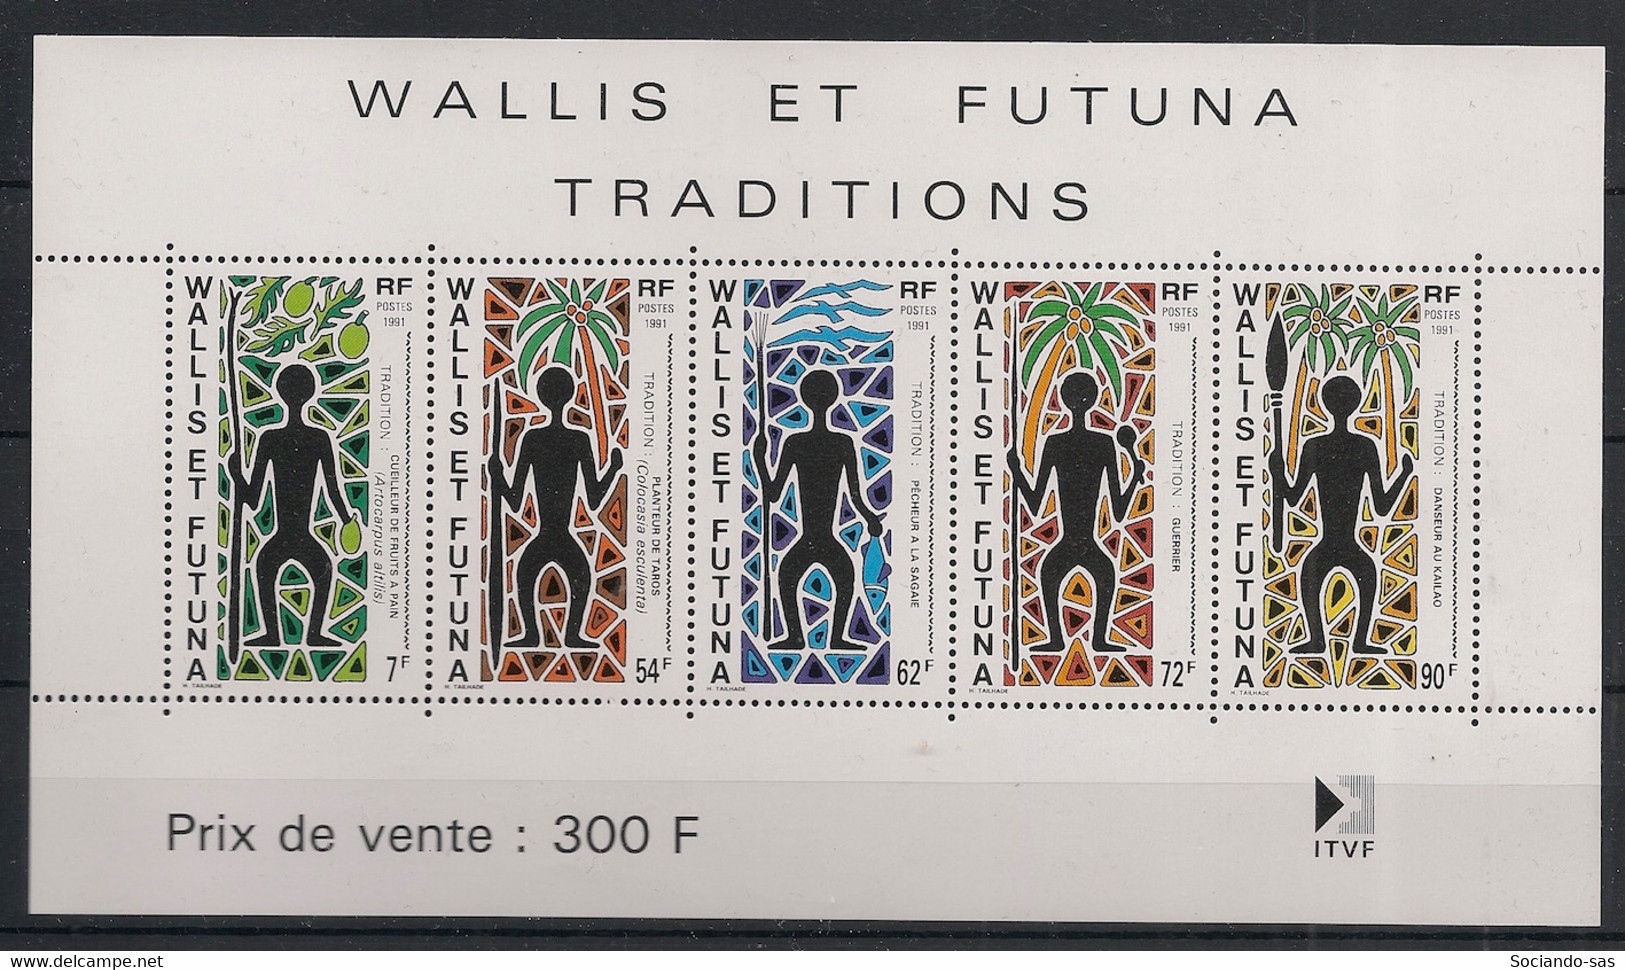 WALLIS ET FUTUNA - 1991 - Bloc Feuillet BF N°YT. 5 - Traditions - Neuf Luxe ** / MNH / Postfrisch - Blocs-feuillets